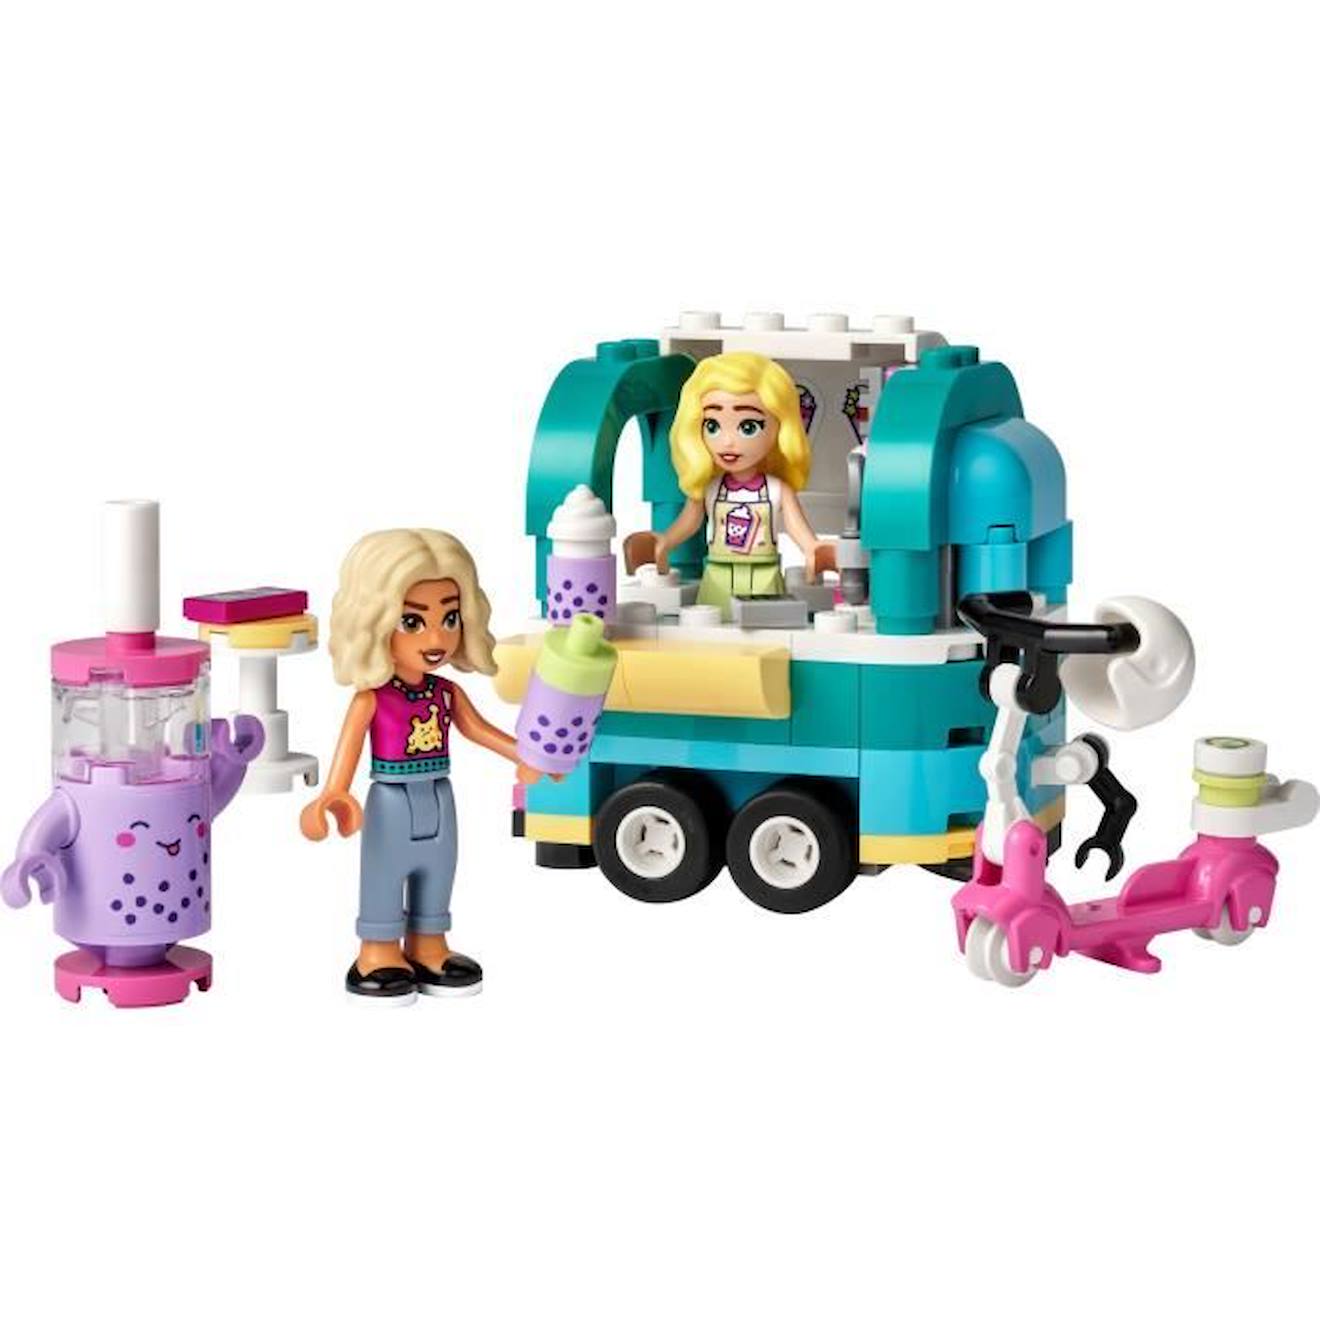 LEGO® Friends 41733 La Boutique Mobile de Bubble Tea, Jouet Enfants 6 Ans,  Scooter, Mini-Poupées blanc - Lego